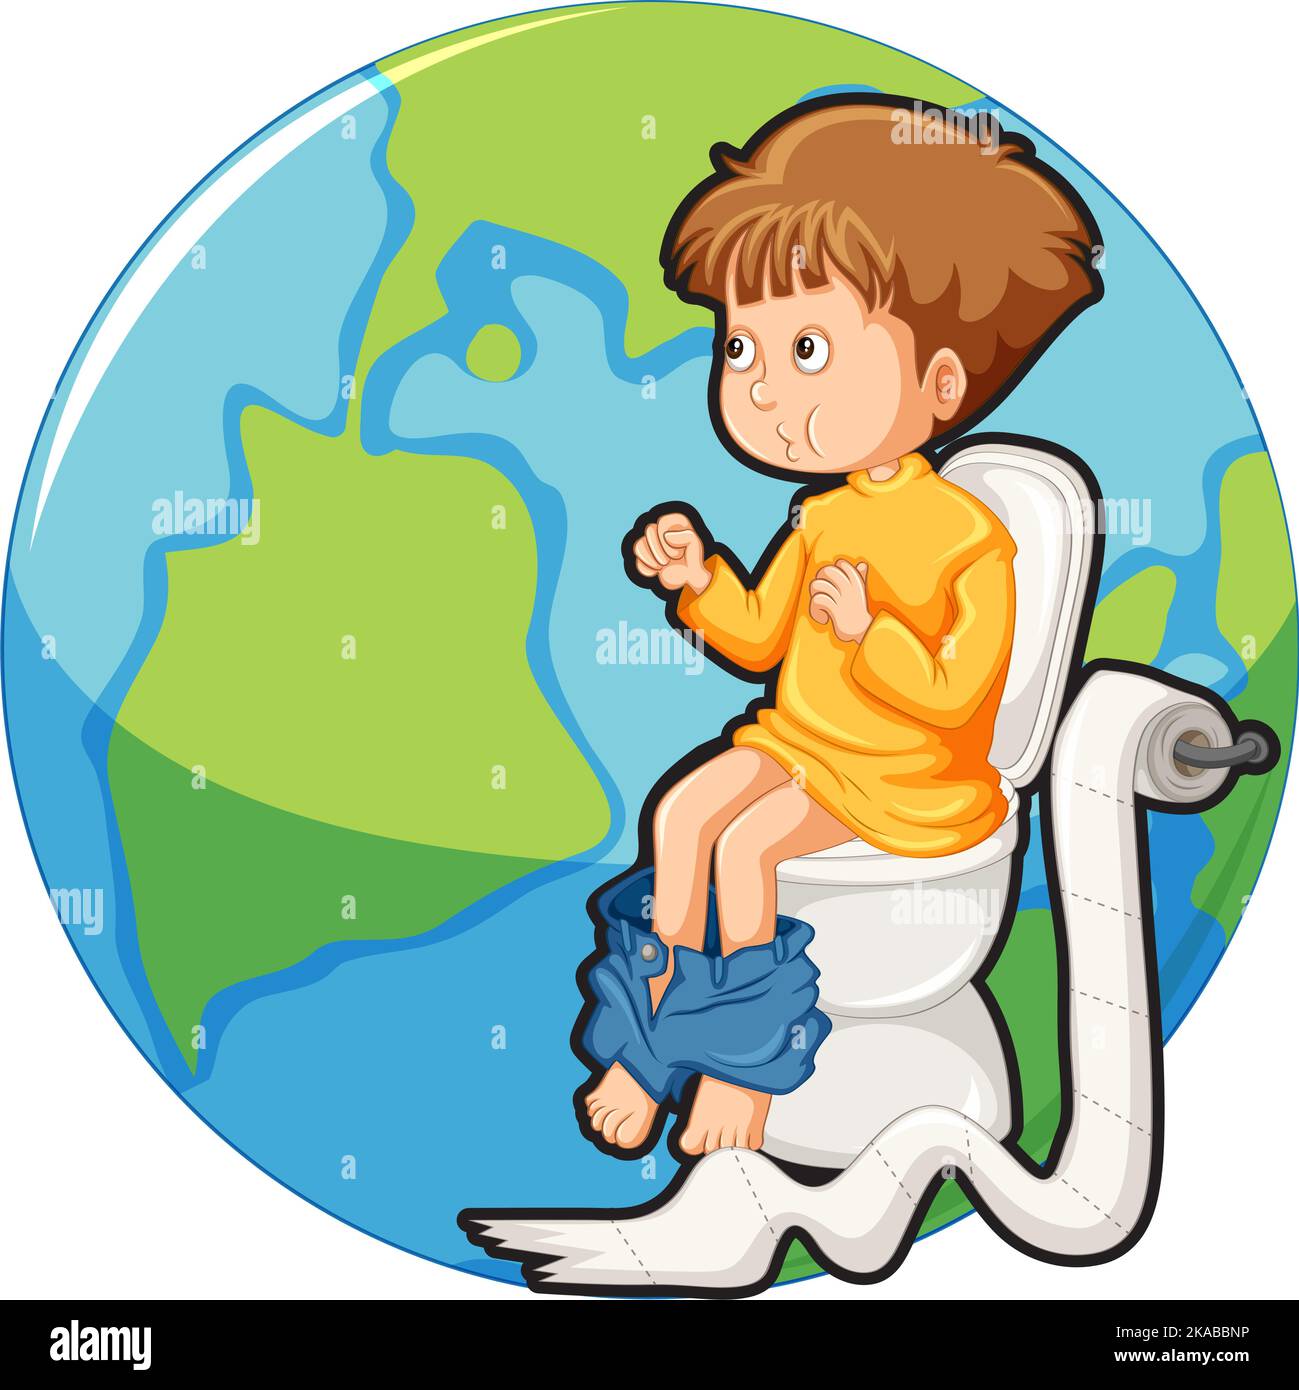 Kid sitting on toilet on earth icon illustration Stock Vector